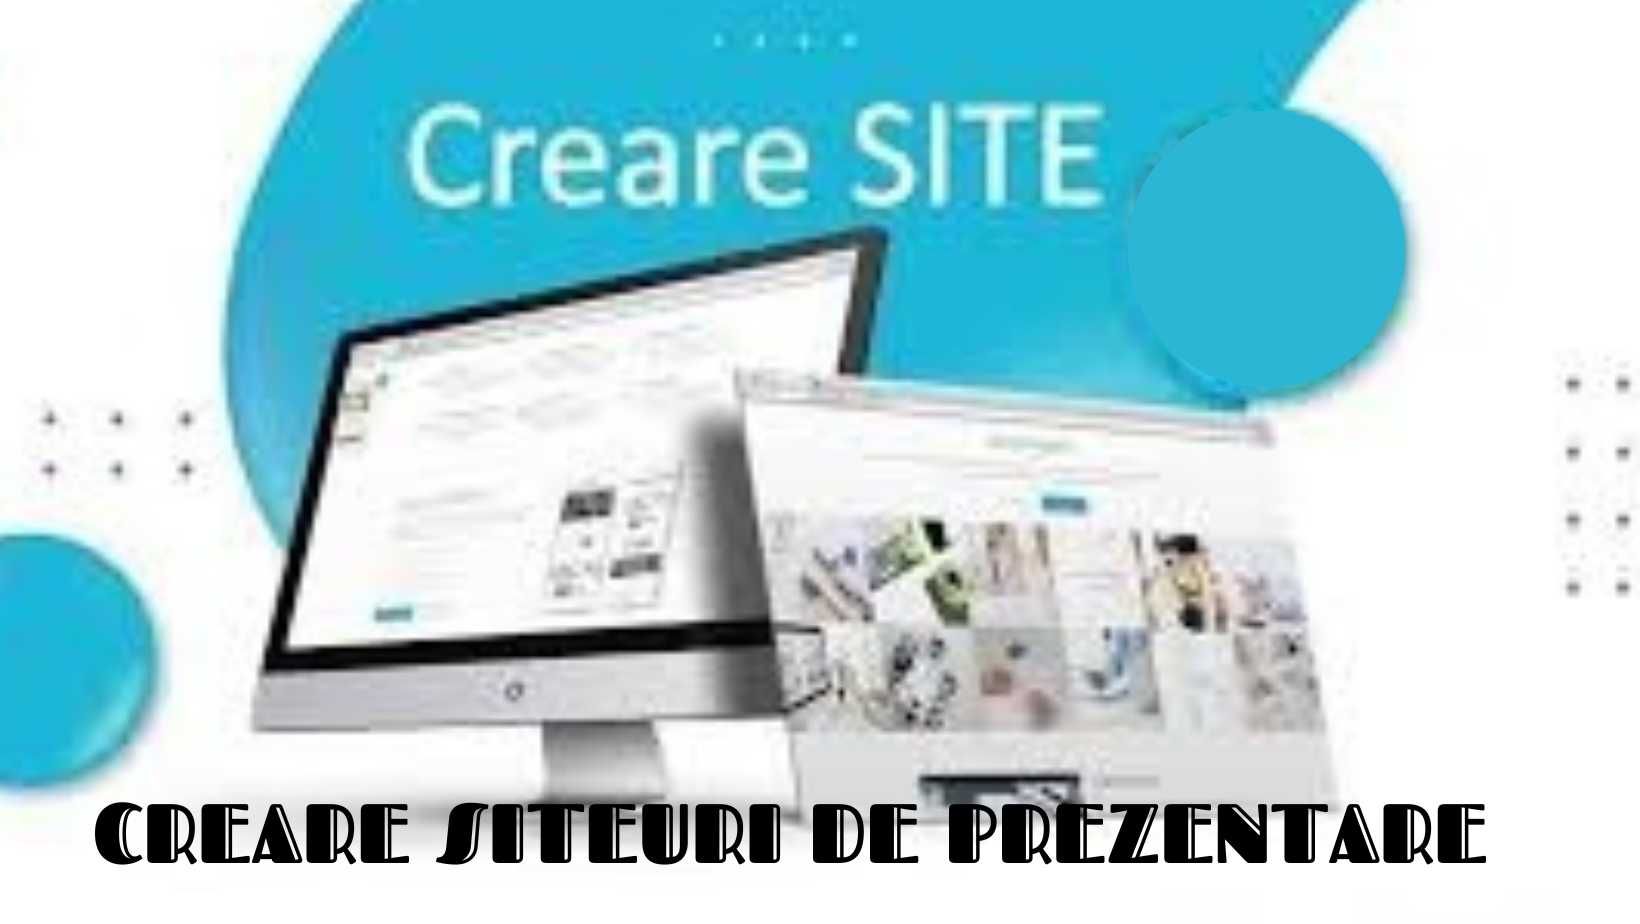 Creare Siteuri De Prezentare - Magazin Online - Promovare siteuri Seo